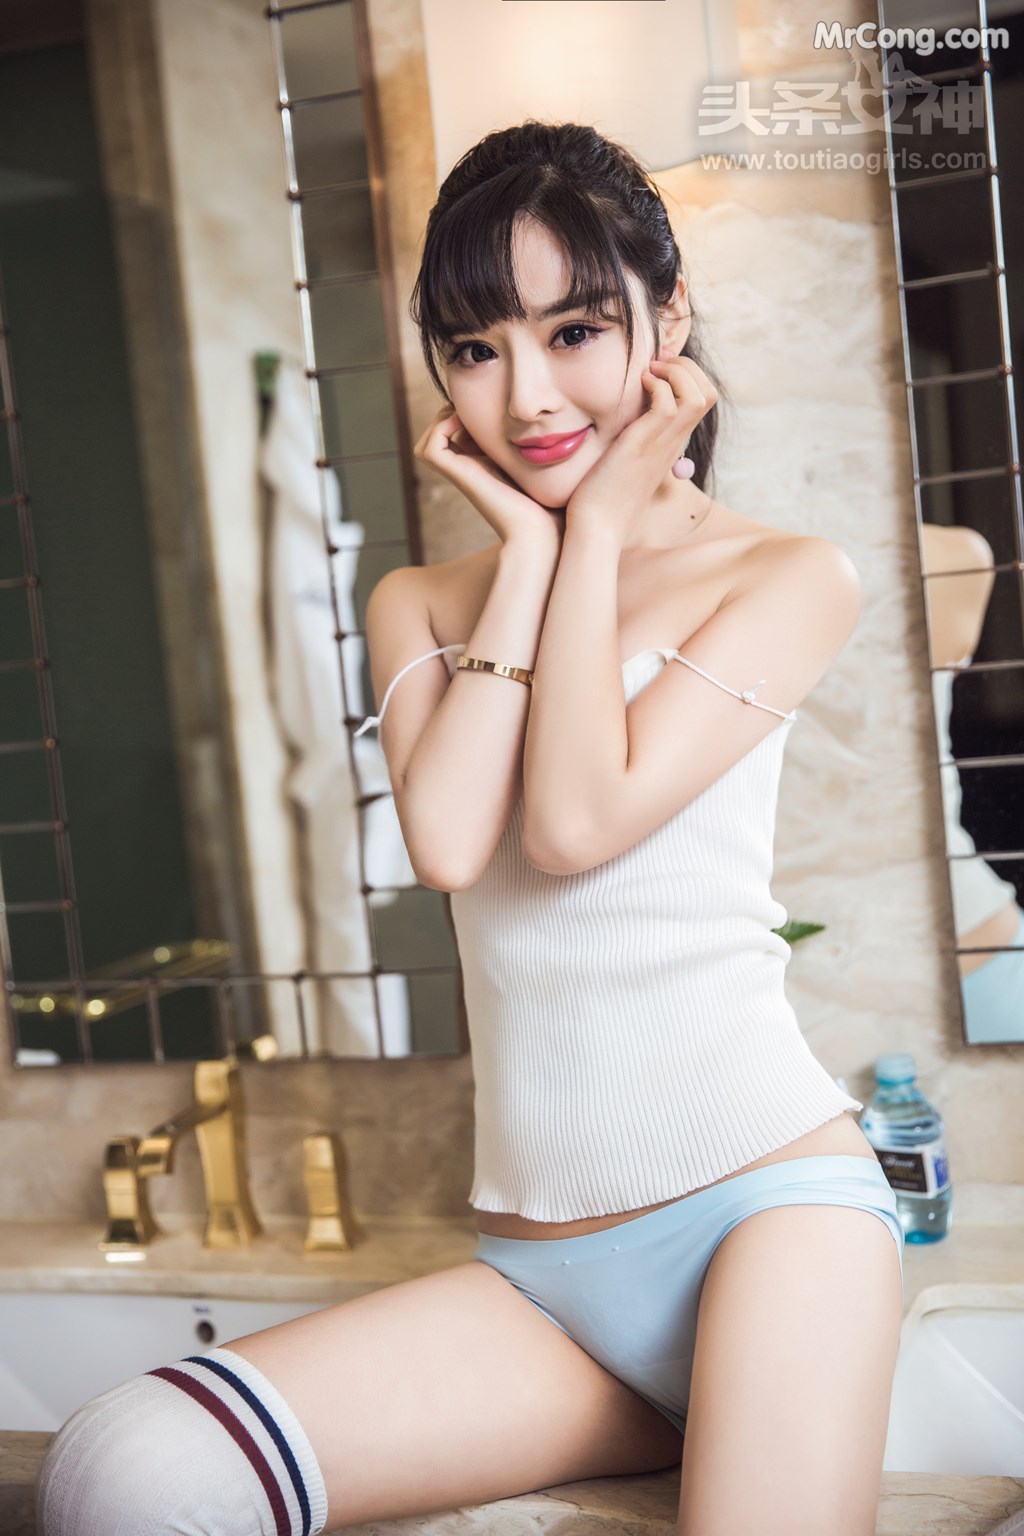 TouTiao 2017-07-30: Model Zhou Xi Yan (周 熙 妍) (62 photos) photo 1-15